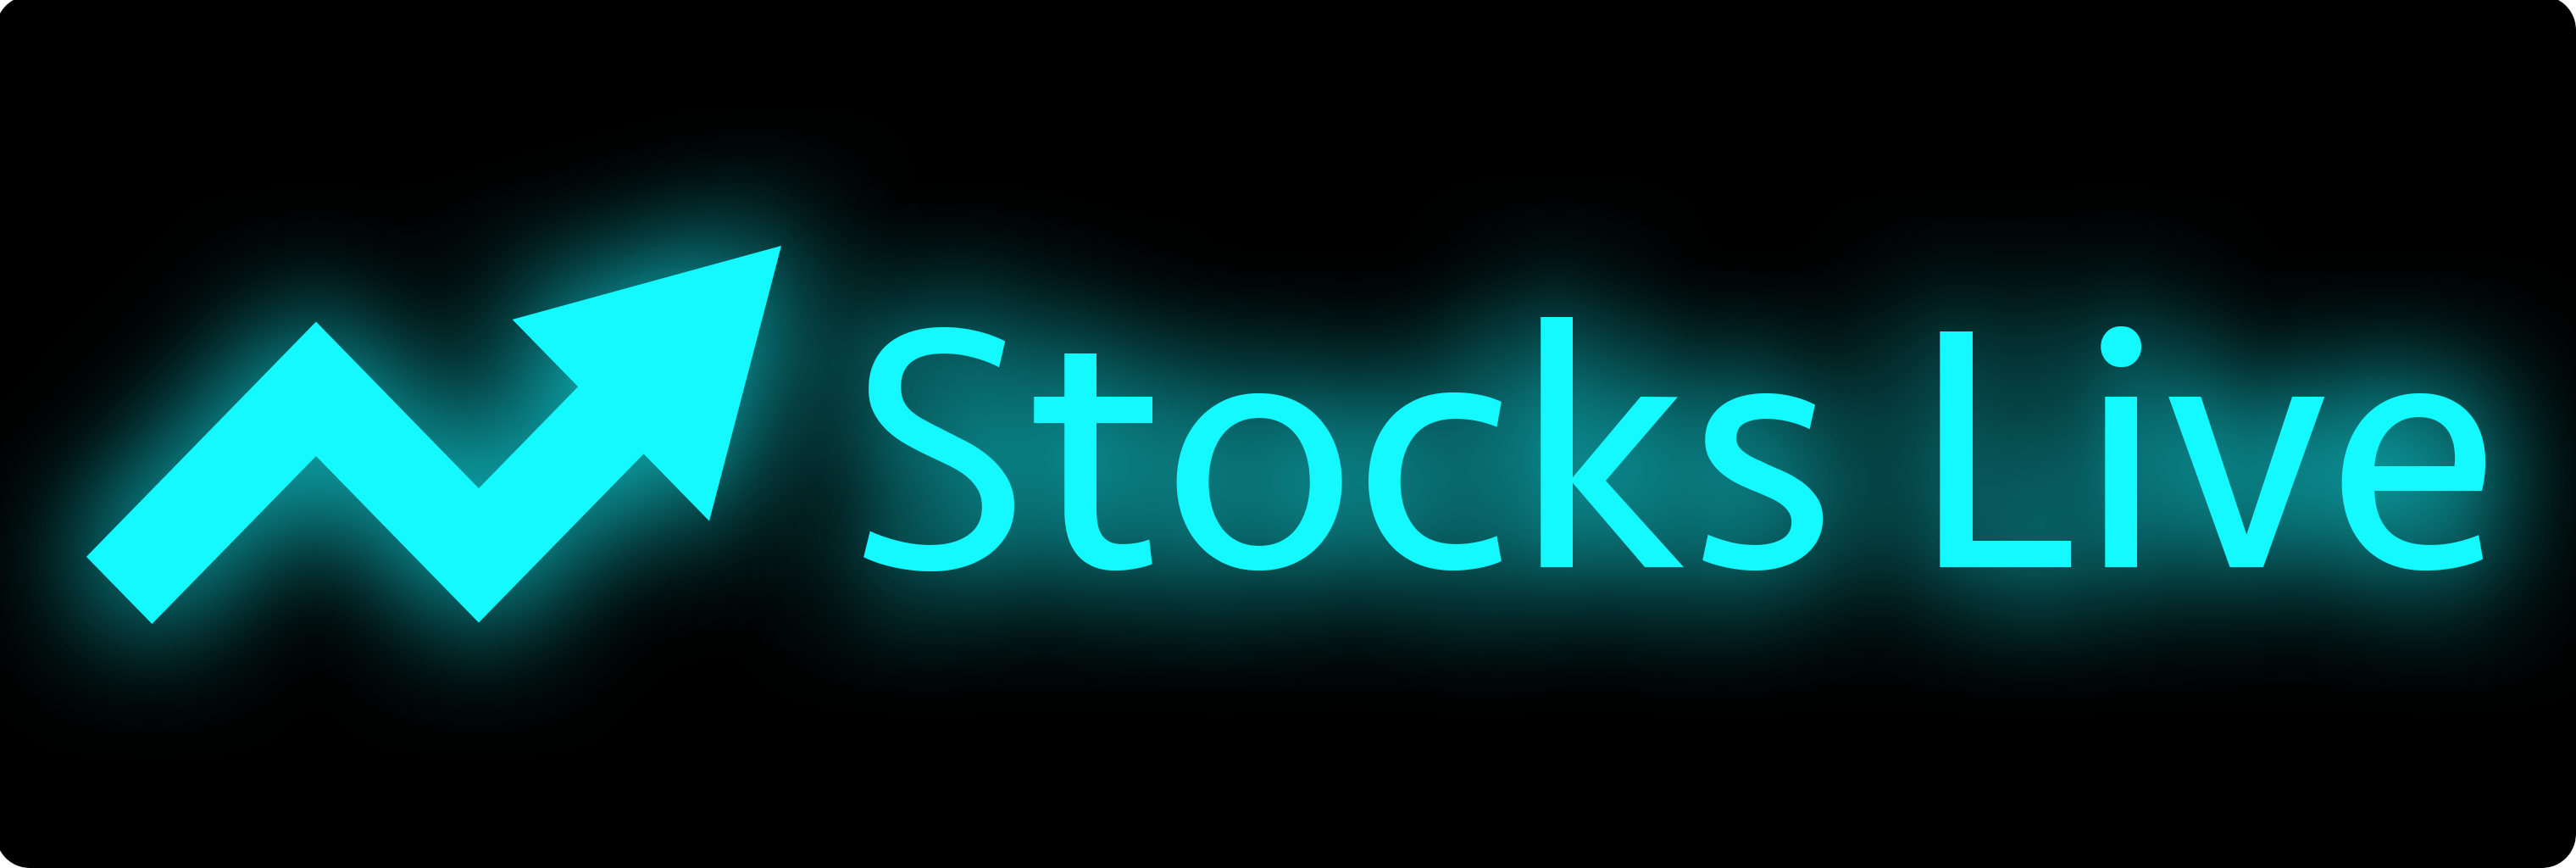 StocksLive